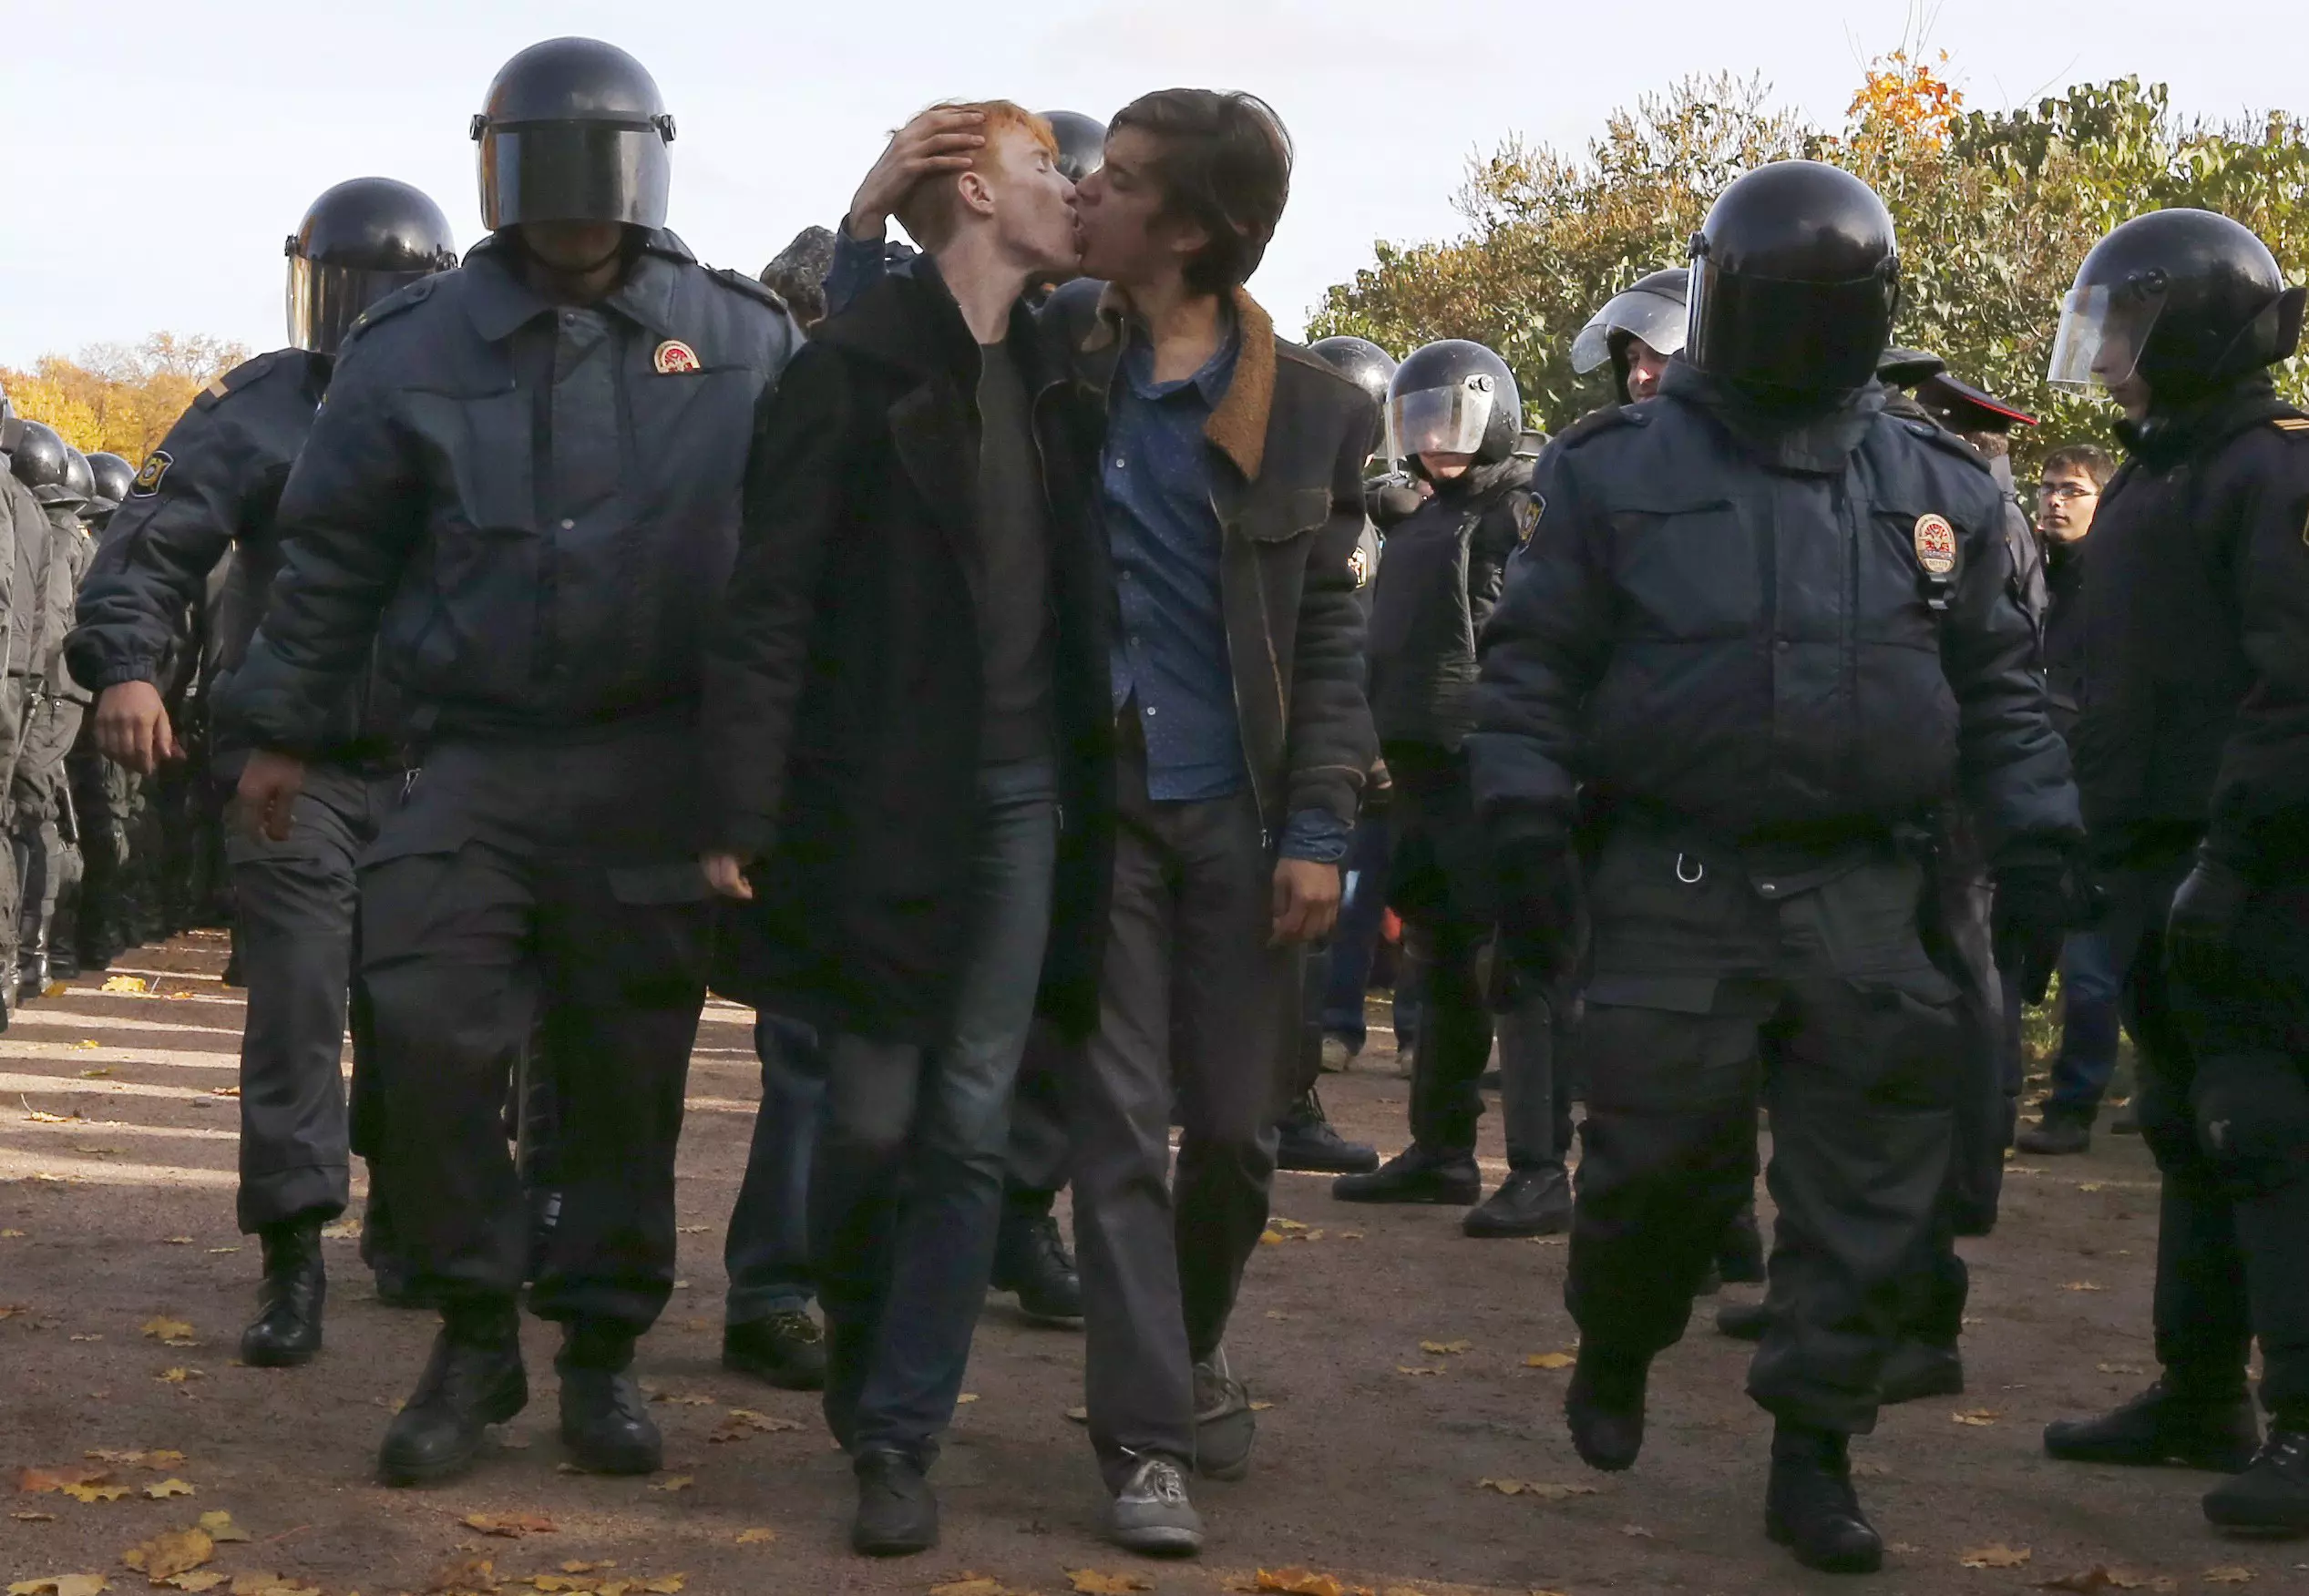 שני צעירים מתנשקים בליווי משטרתי